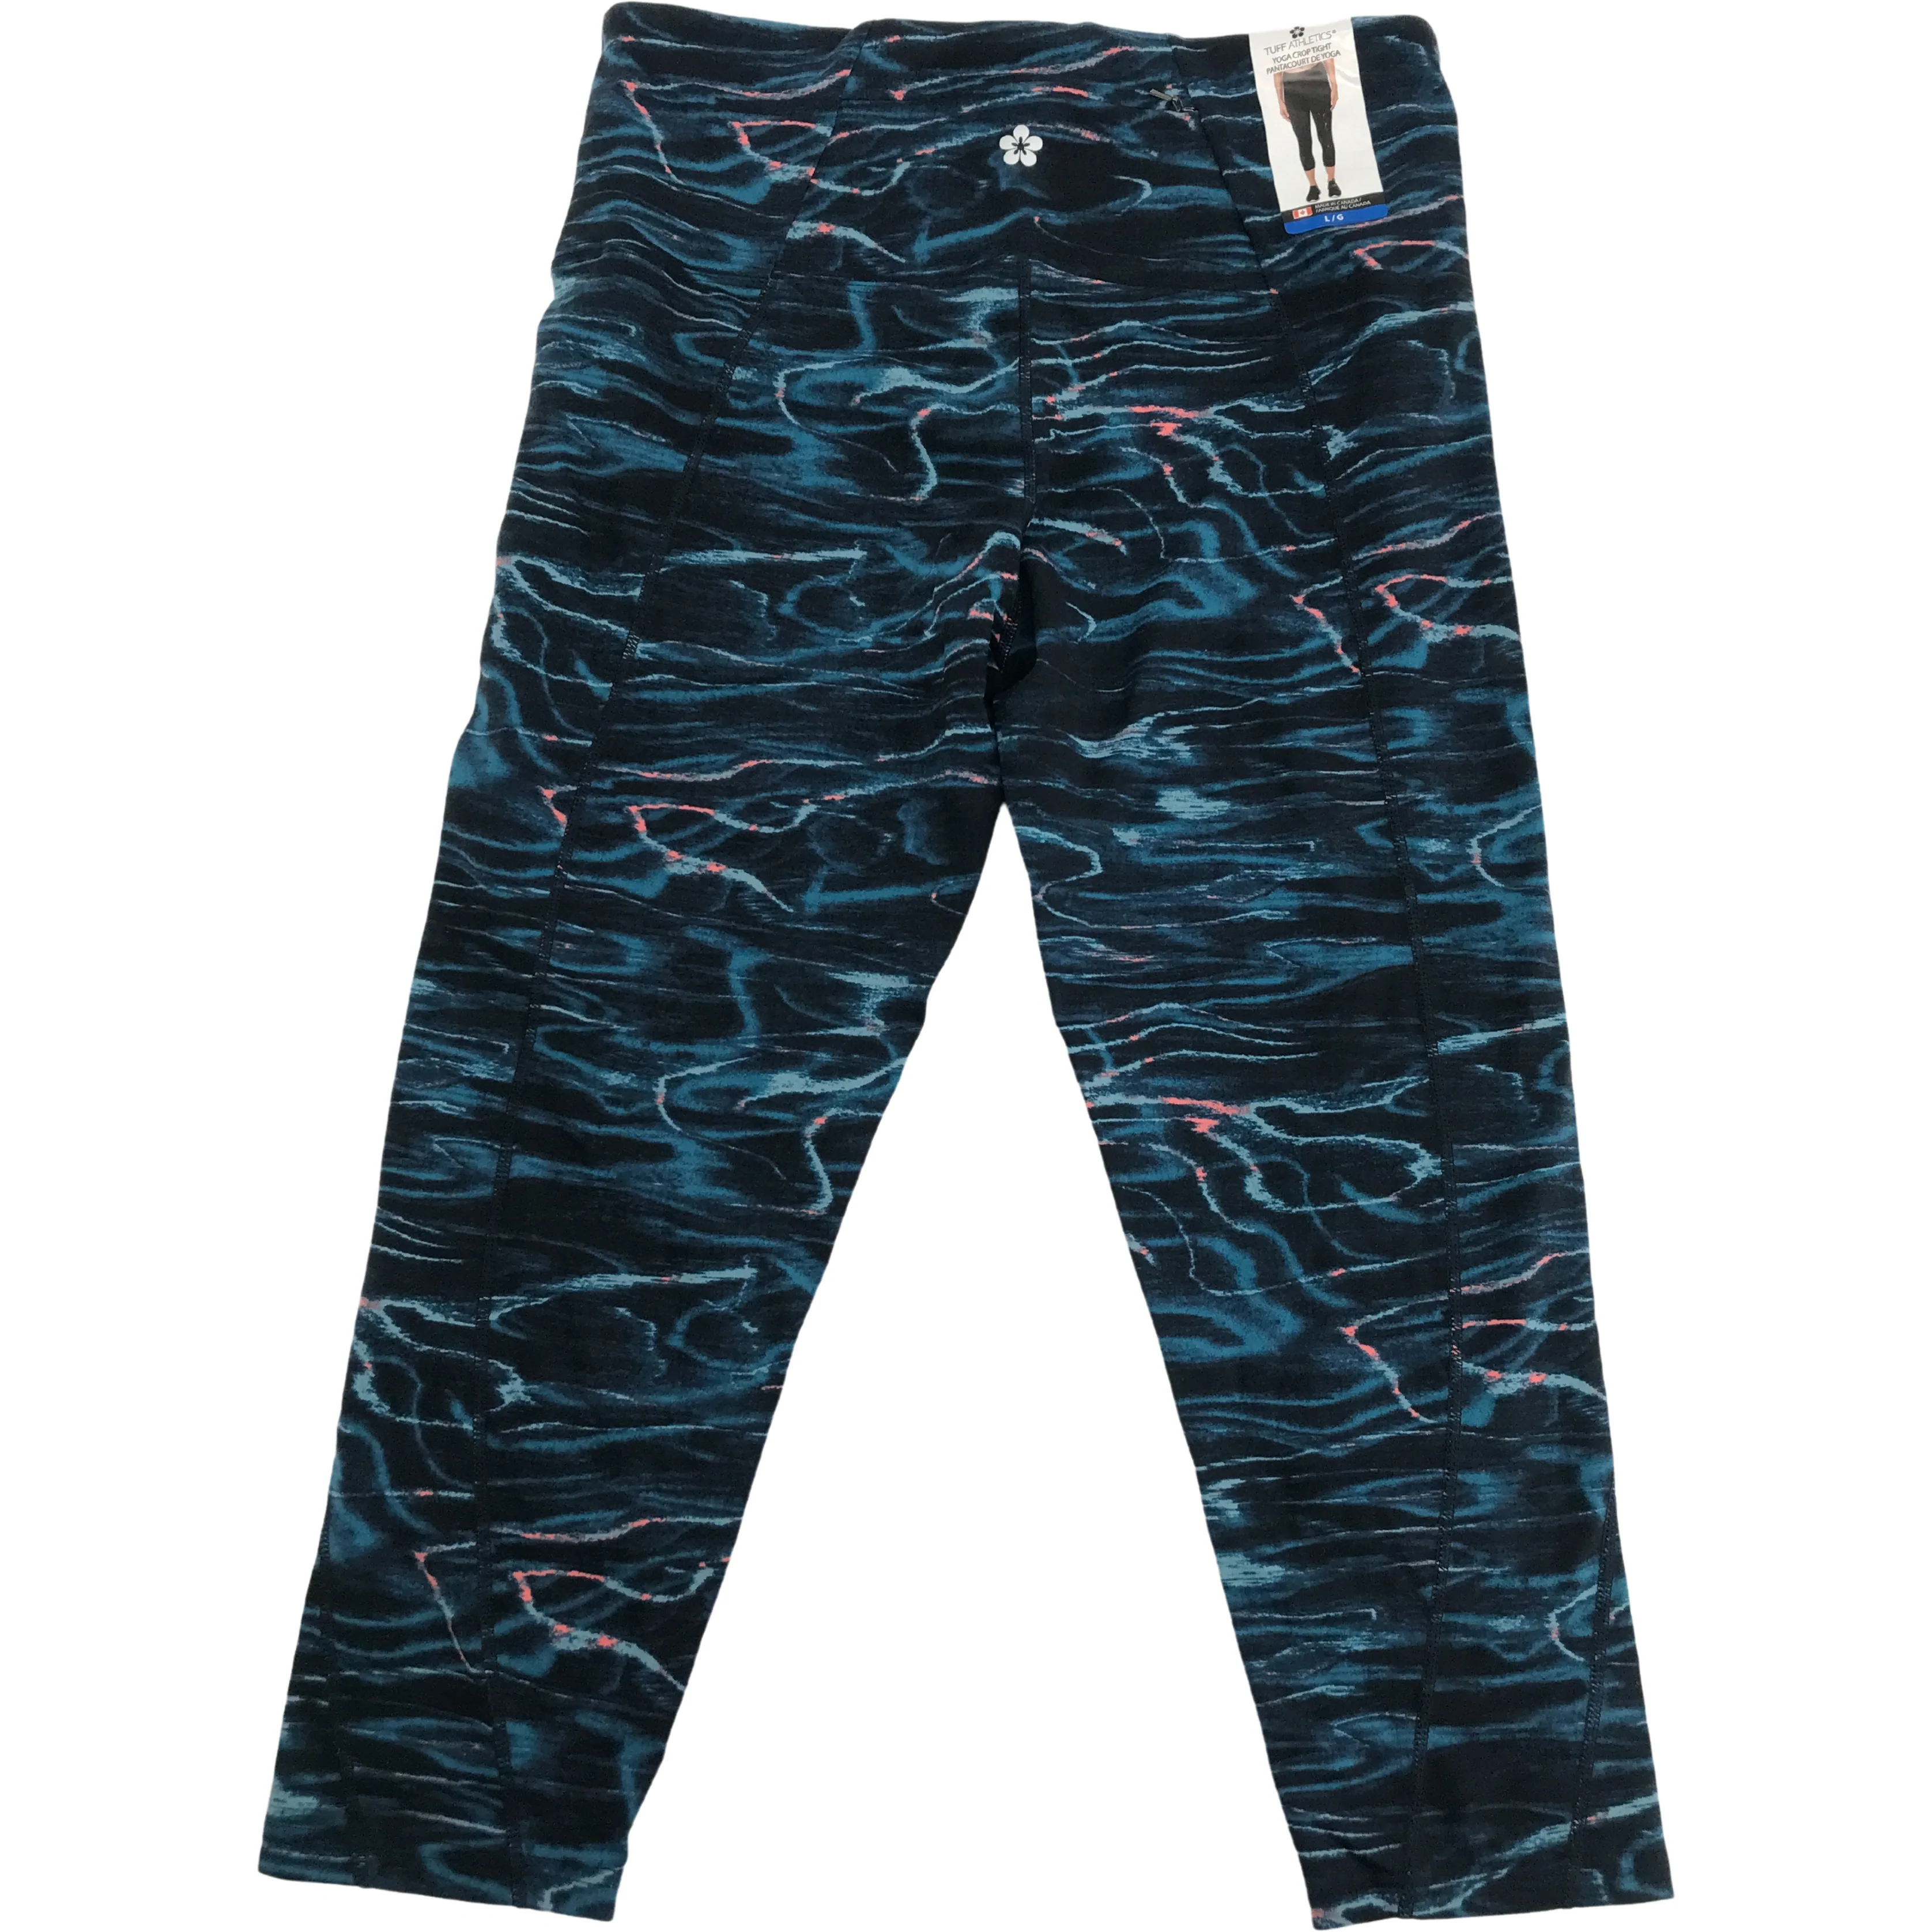 Blue Patterned Women's Capri Yoga Pants